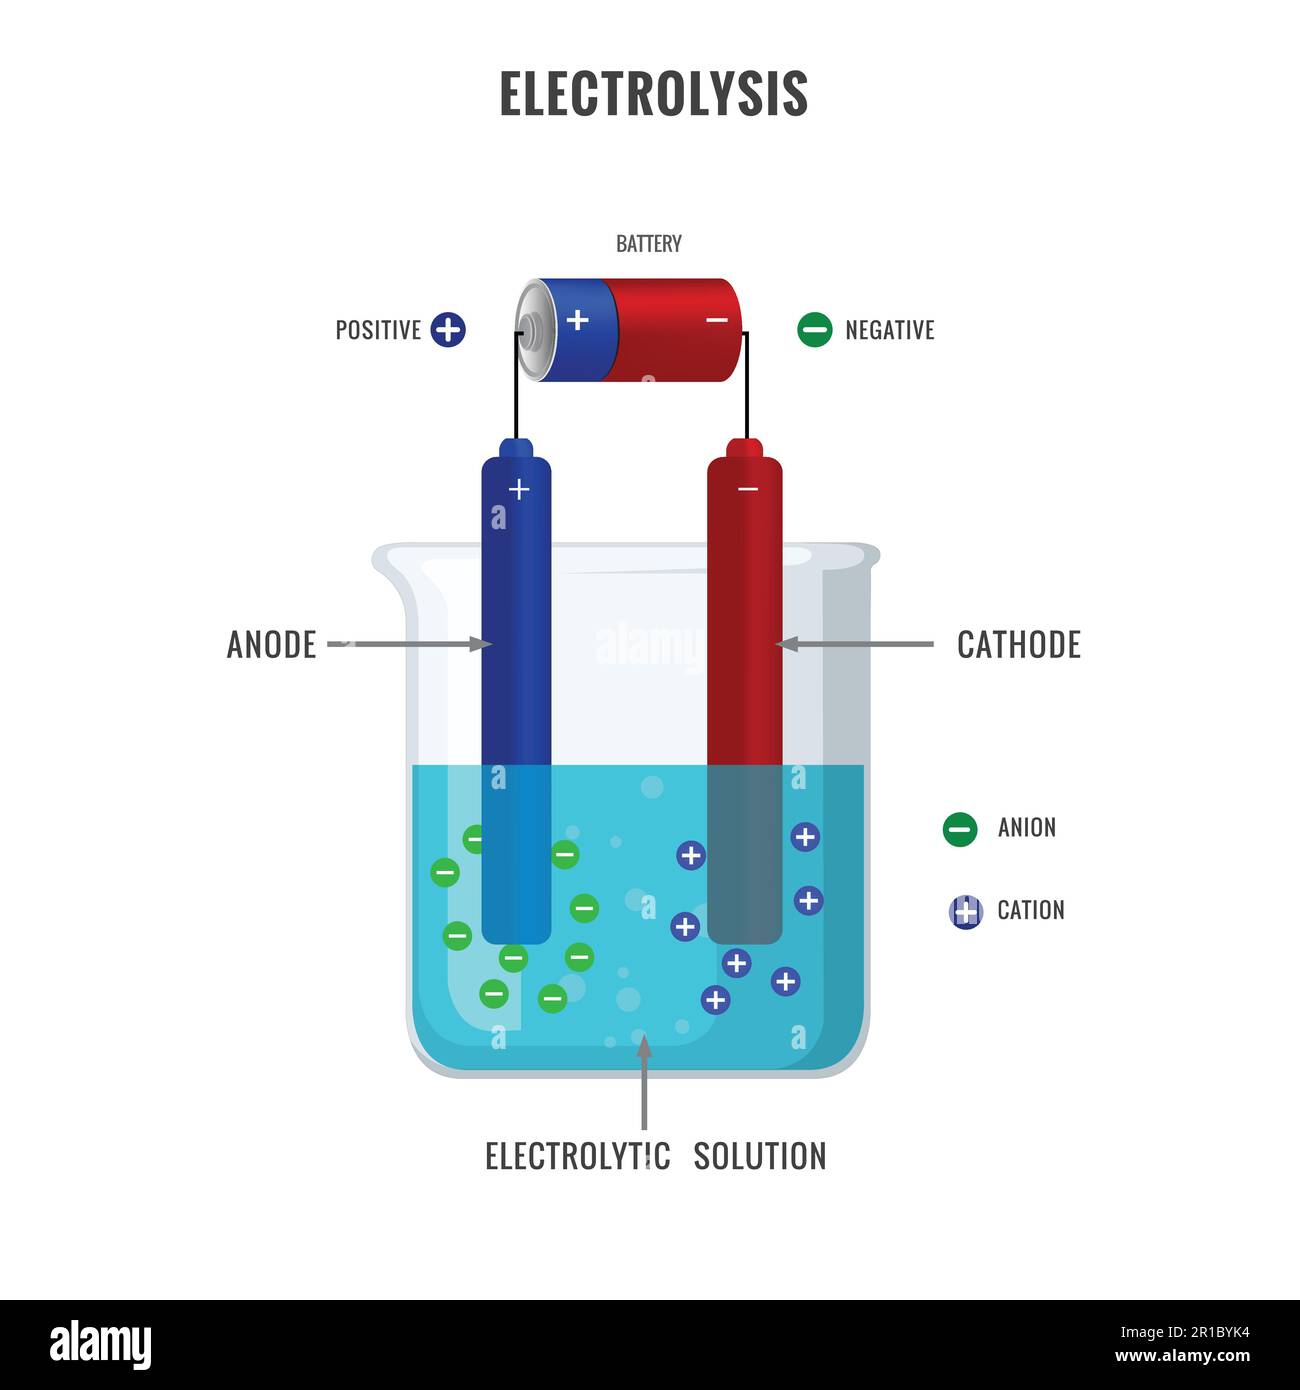 Illustration du vecteur de solution électrolytique par électrolyse. Procédé d'électrolyse simple d'un électrolyte. L'expérience éducative étiquetée implique catho Illustration de Vecteur